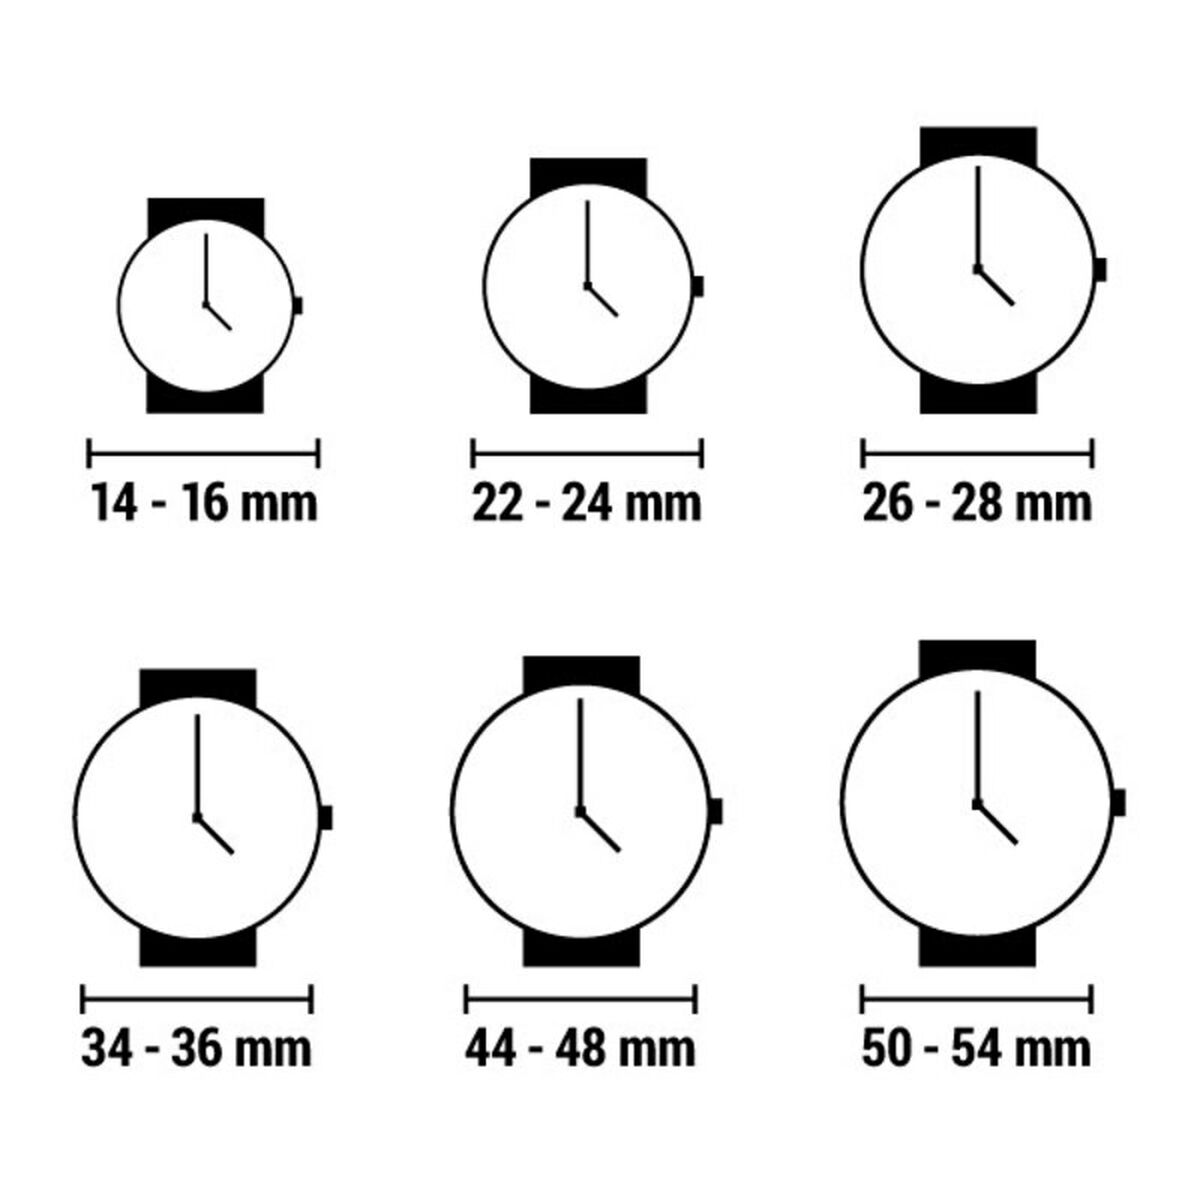 Horloge Heren Arabians HBP2210Y (Ø 45 mm)